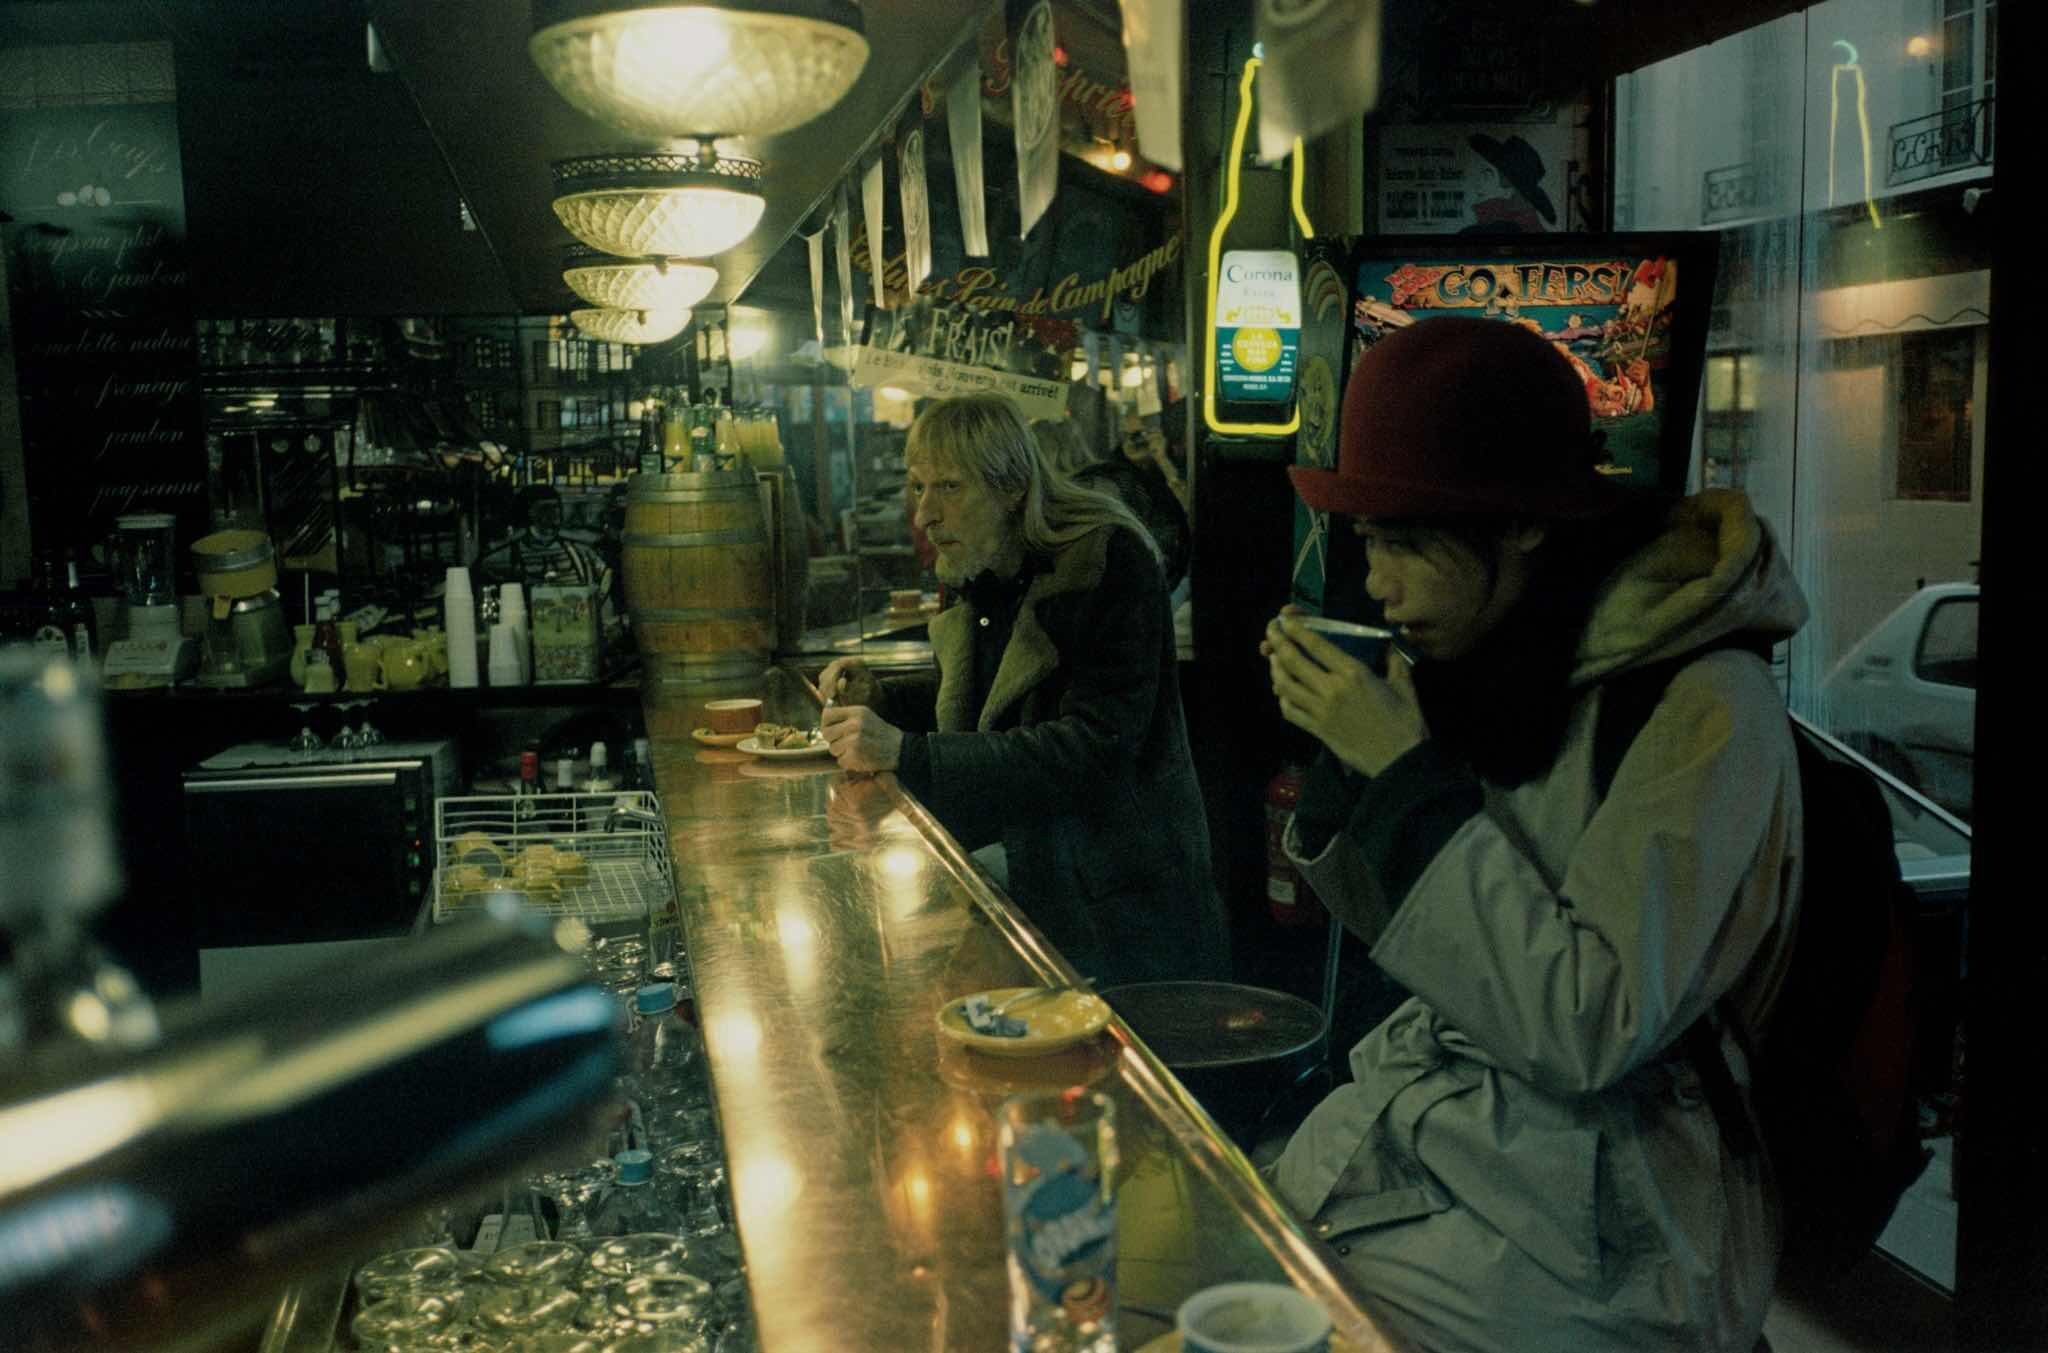 Проект Ежедневный отчет, Париж, сцена в кафе, декабрь, 1999 год. Фотограф Франк Хорват